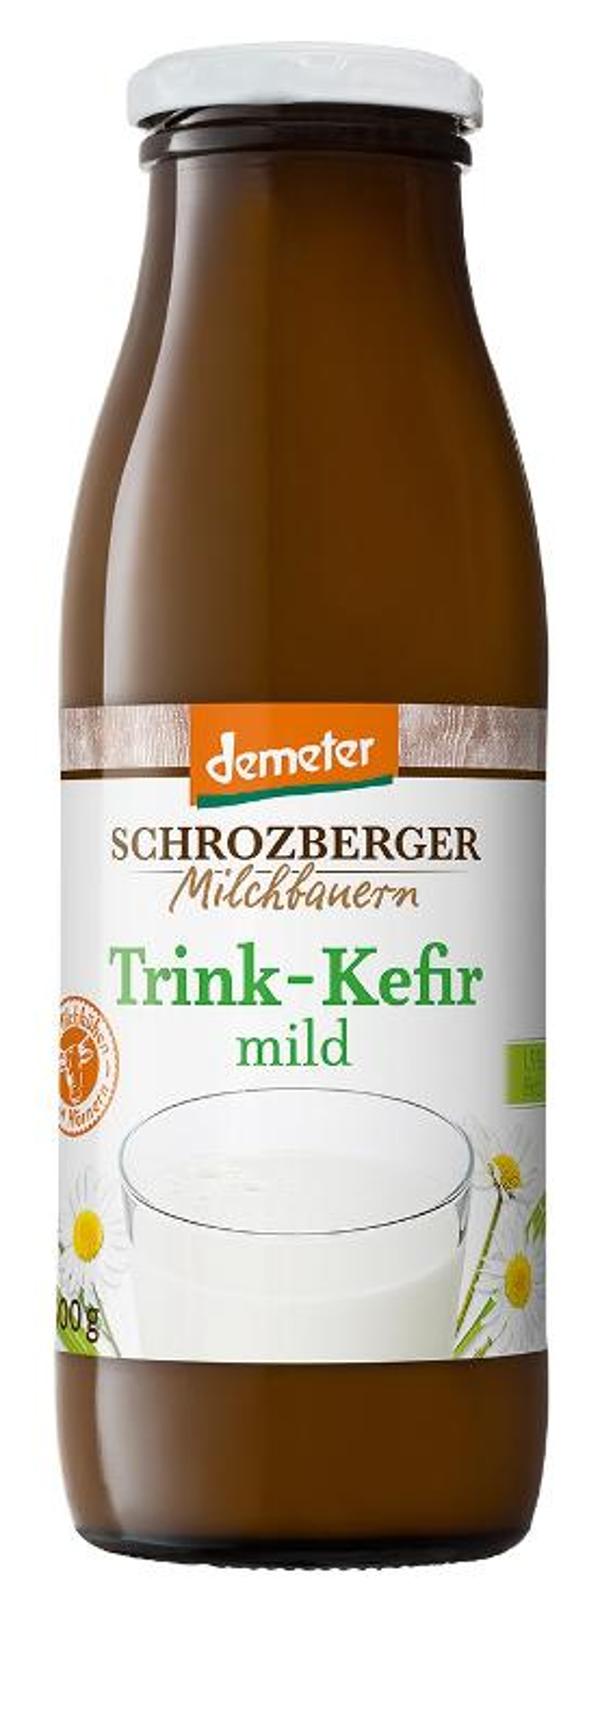 Produktfoto zu Schrozberger Trink-Kefir mild, 1,5% - 500g